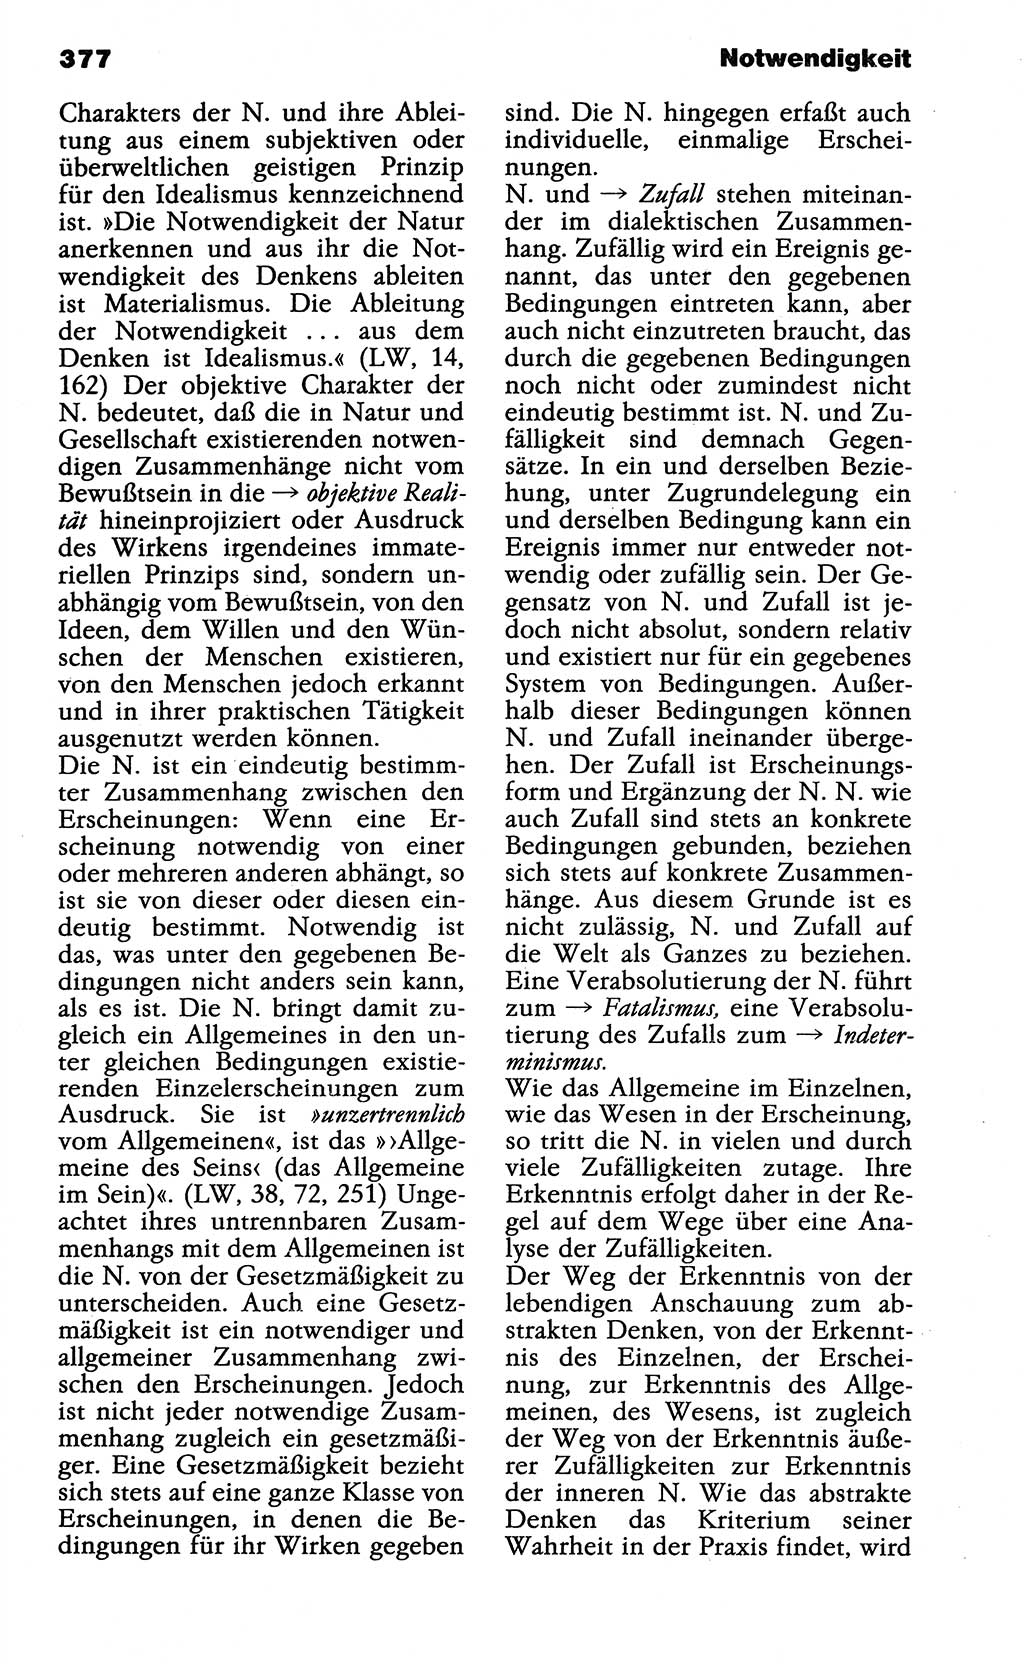 Wörterbuch der marxistisch-leninistischen Philosophie [Deutsche Demokratische Republik (DDR)] 1985, Seite 377 (Wb. ML Phil. DDR 1985, S. 377)